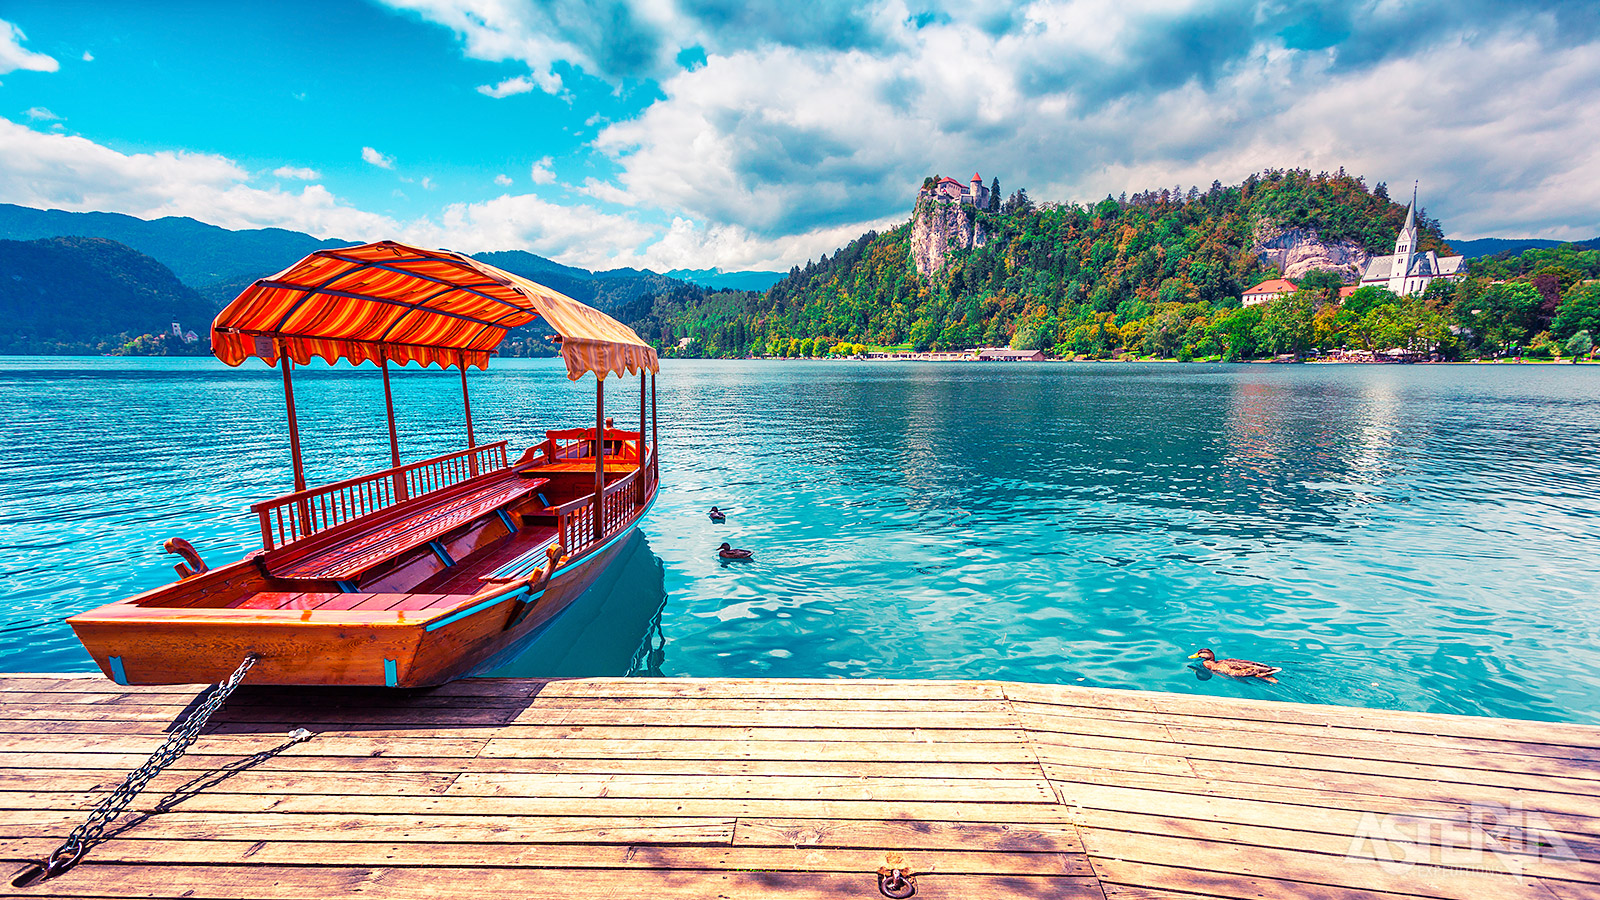 Met een traditionele ‘pletna’, een gondel met een dakje, maak je een tocht op het meer van Bled